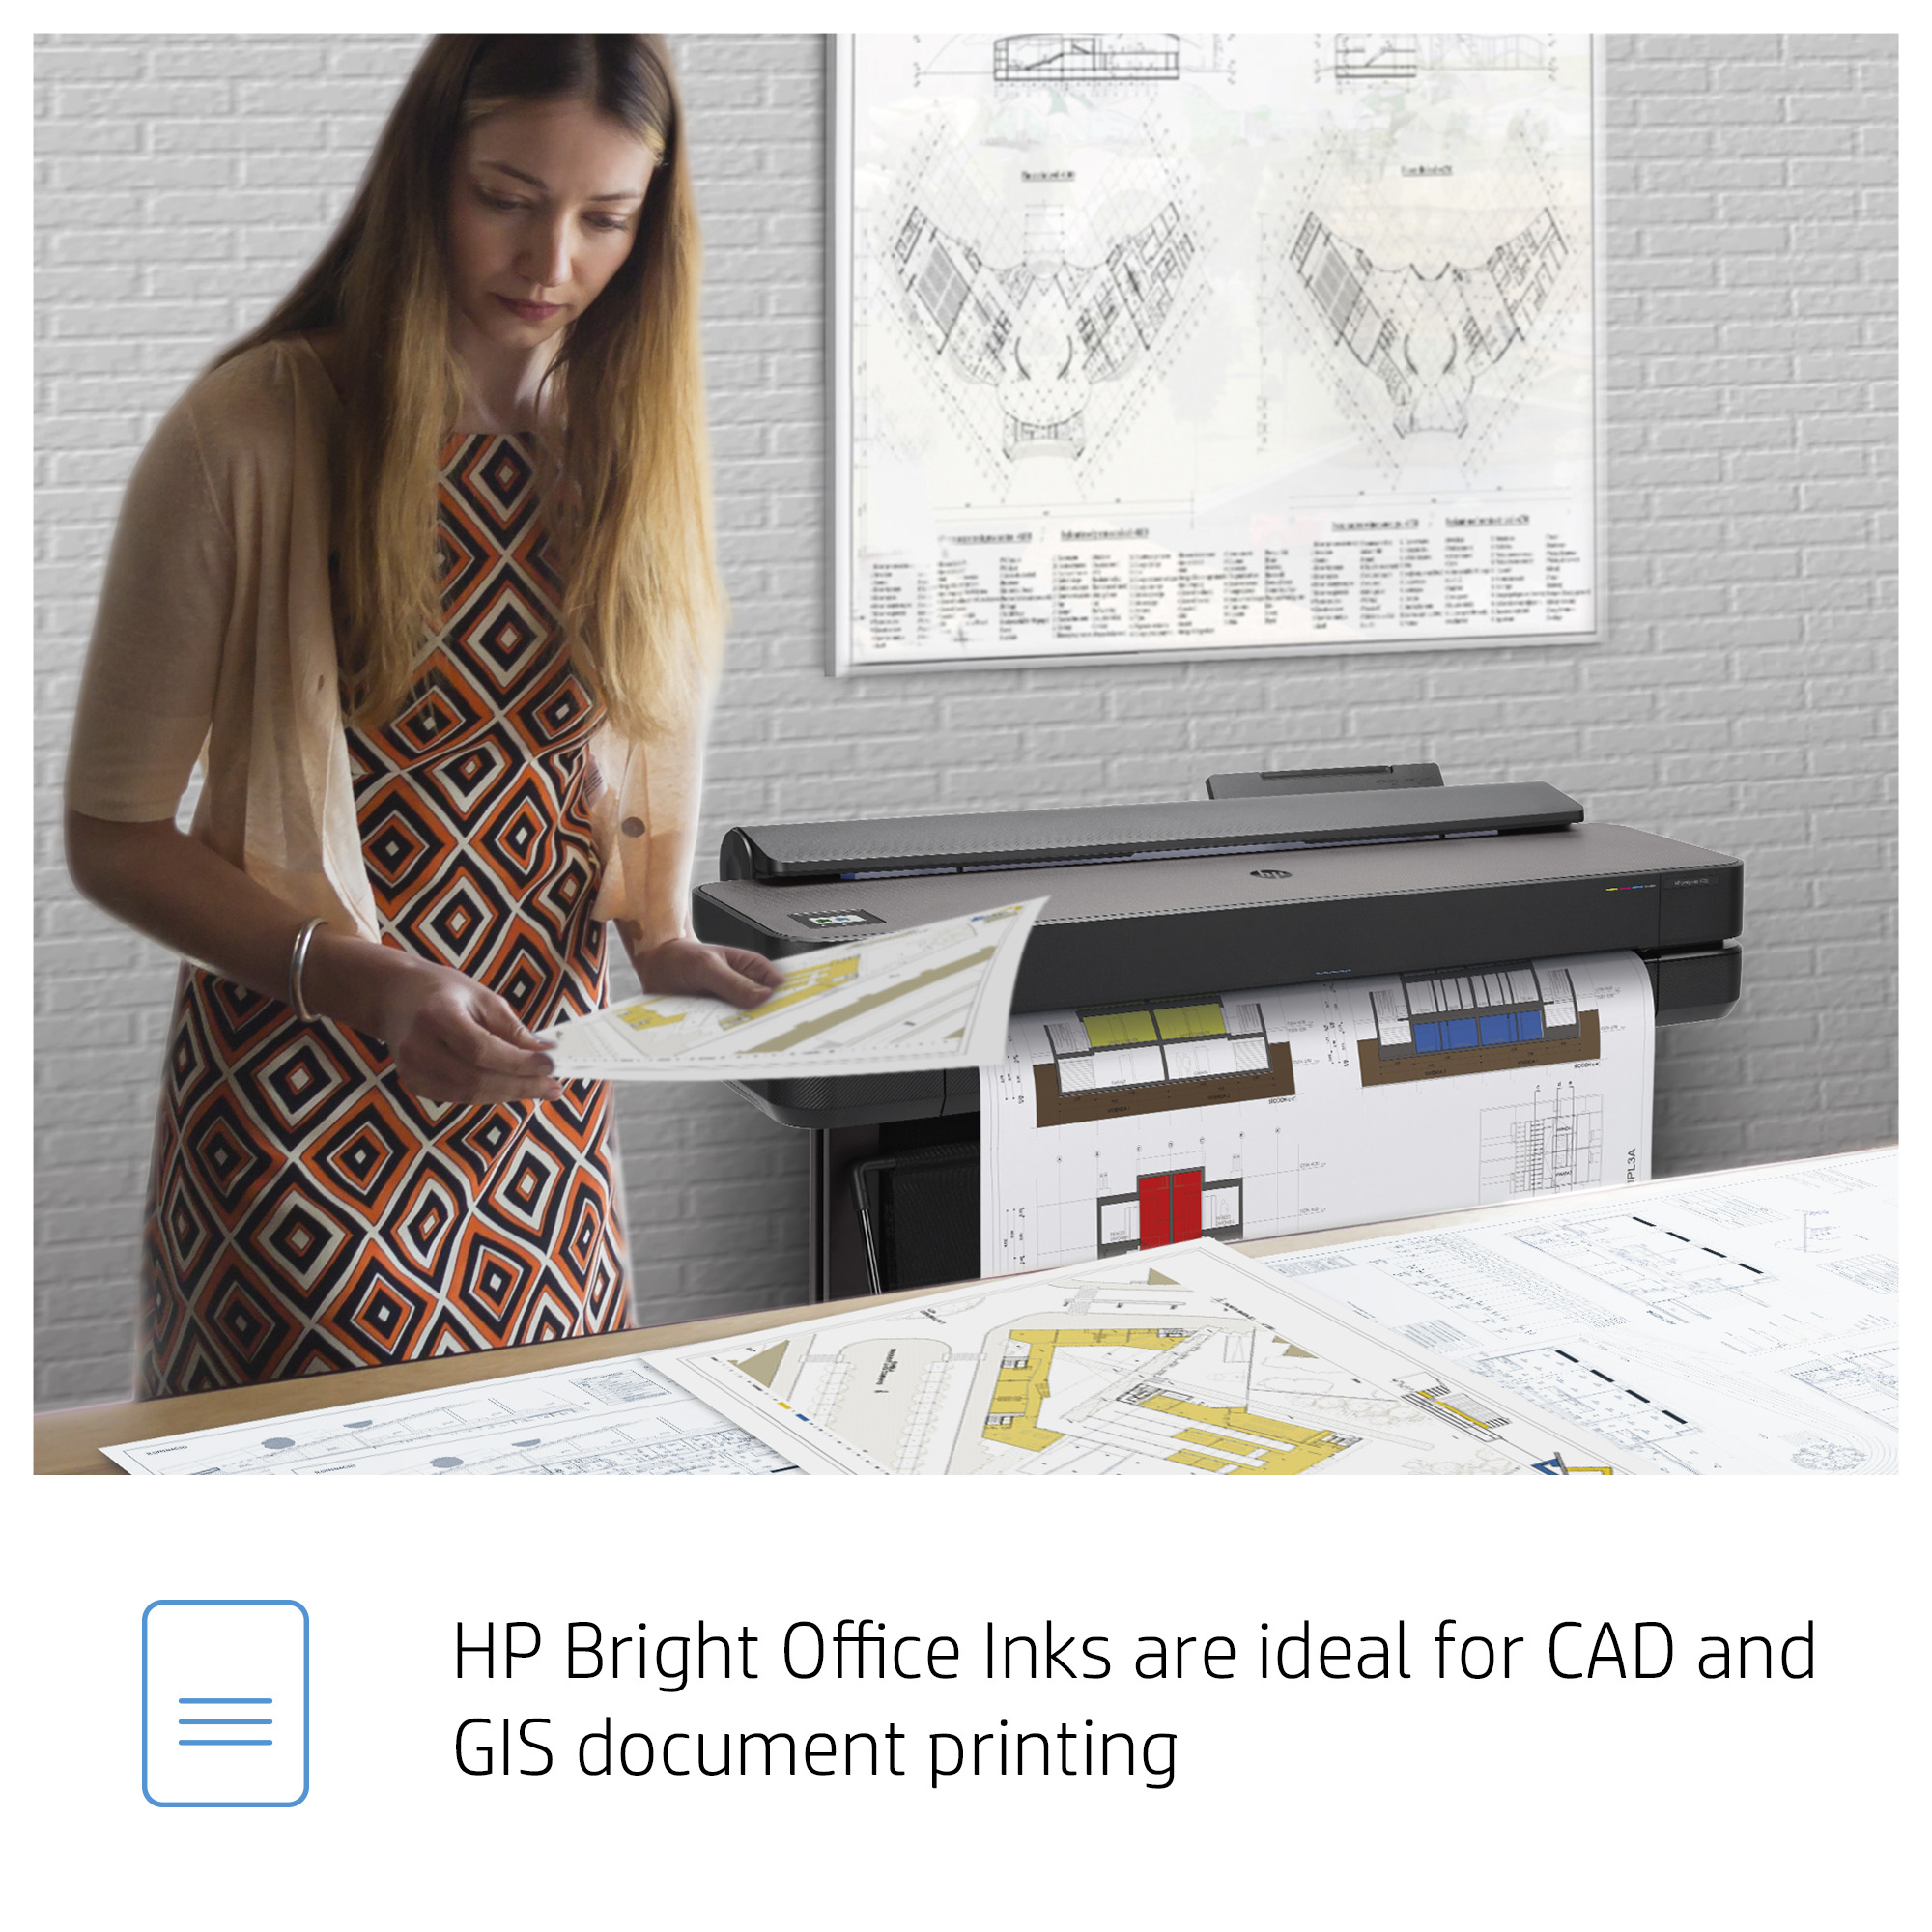 HP 730 DesignJet Druckerpatrone Magenta 300 ml - Tinte auf Farbstoffbasis - 300 ml - 1 Stück(e)